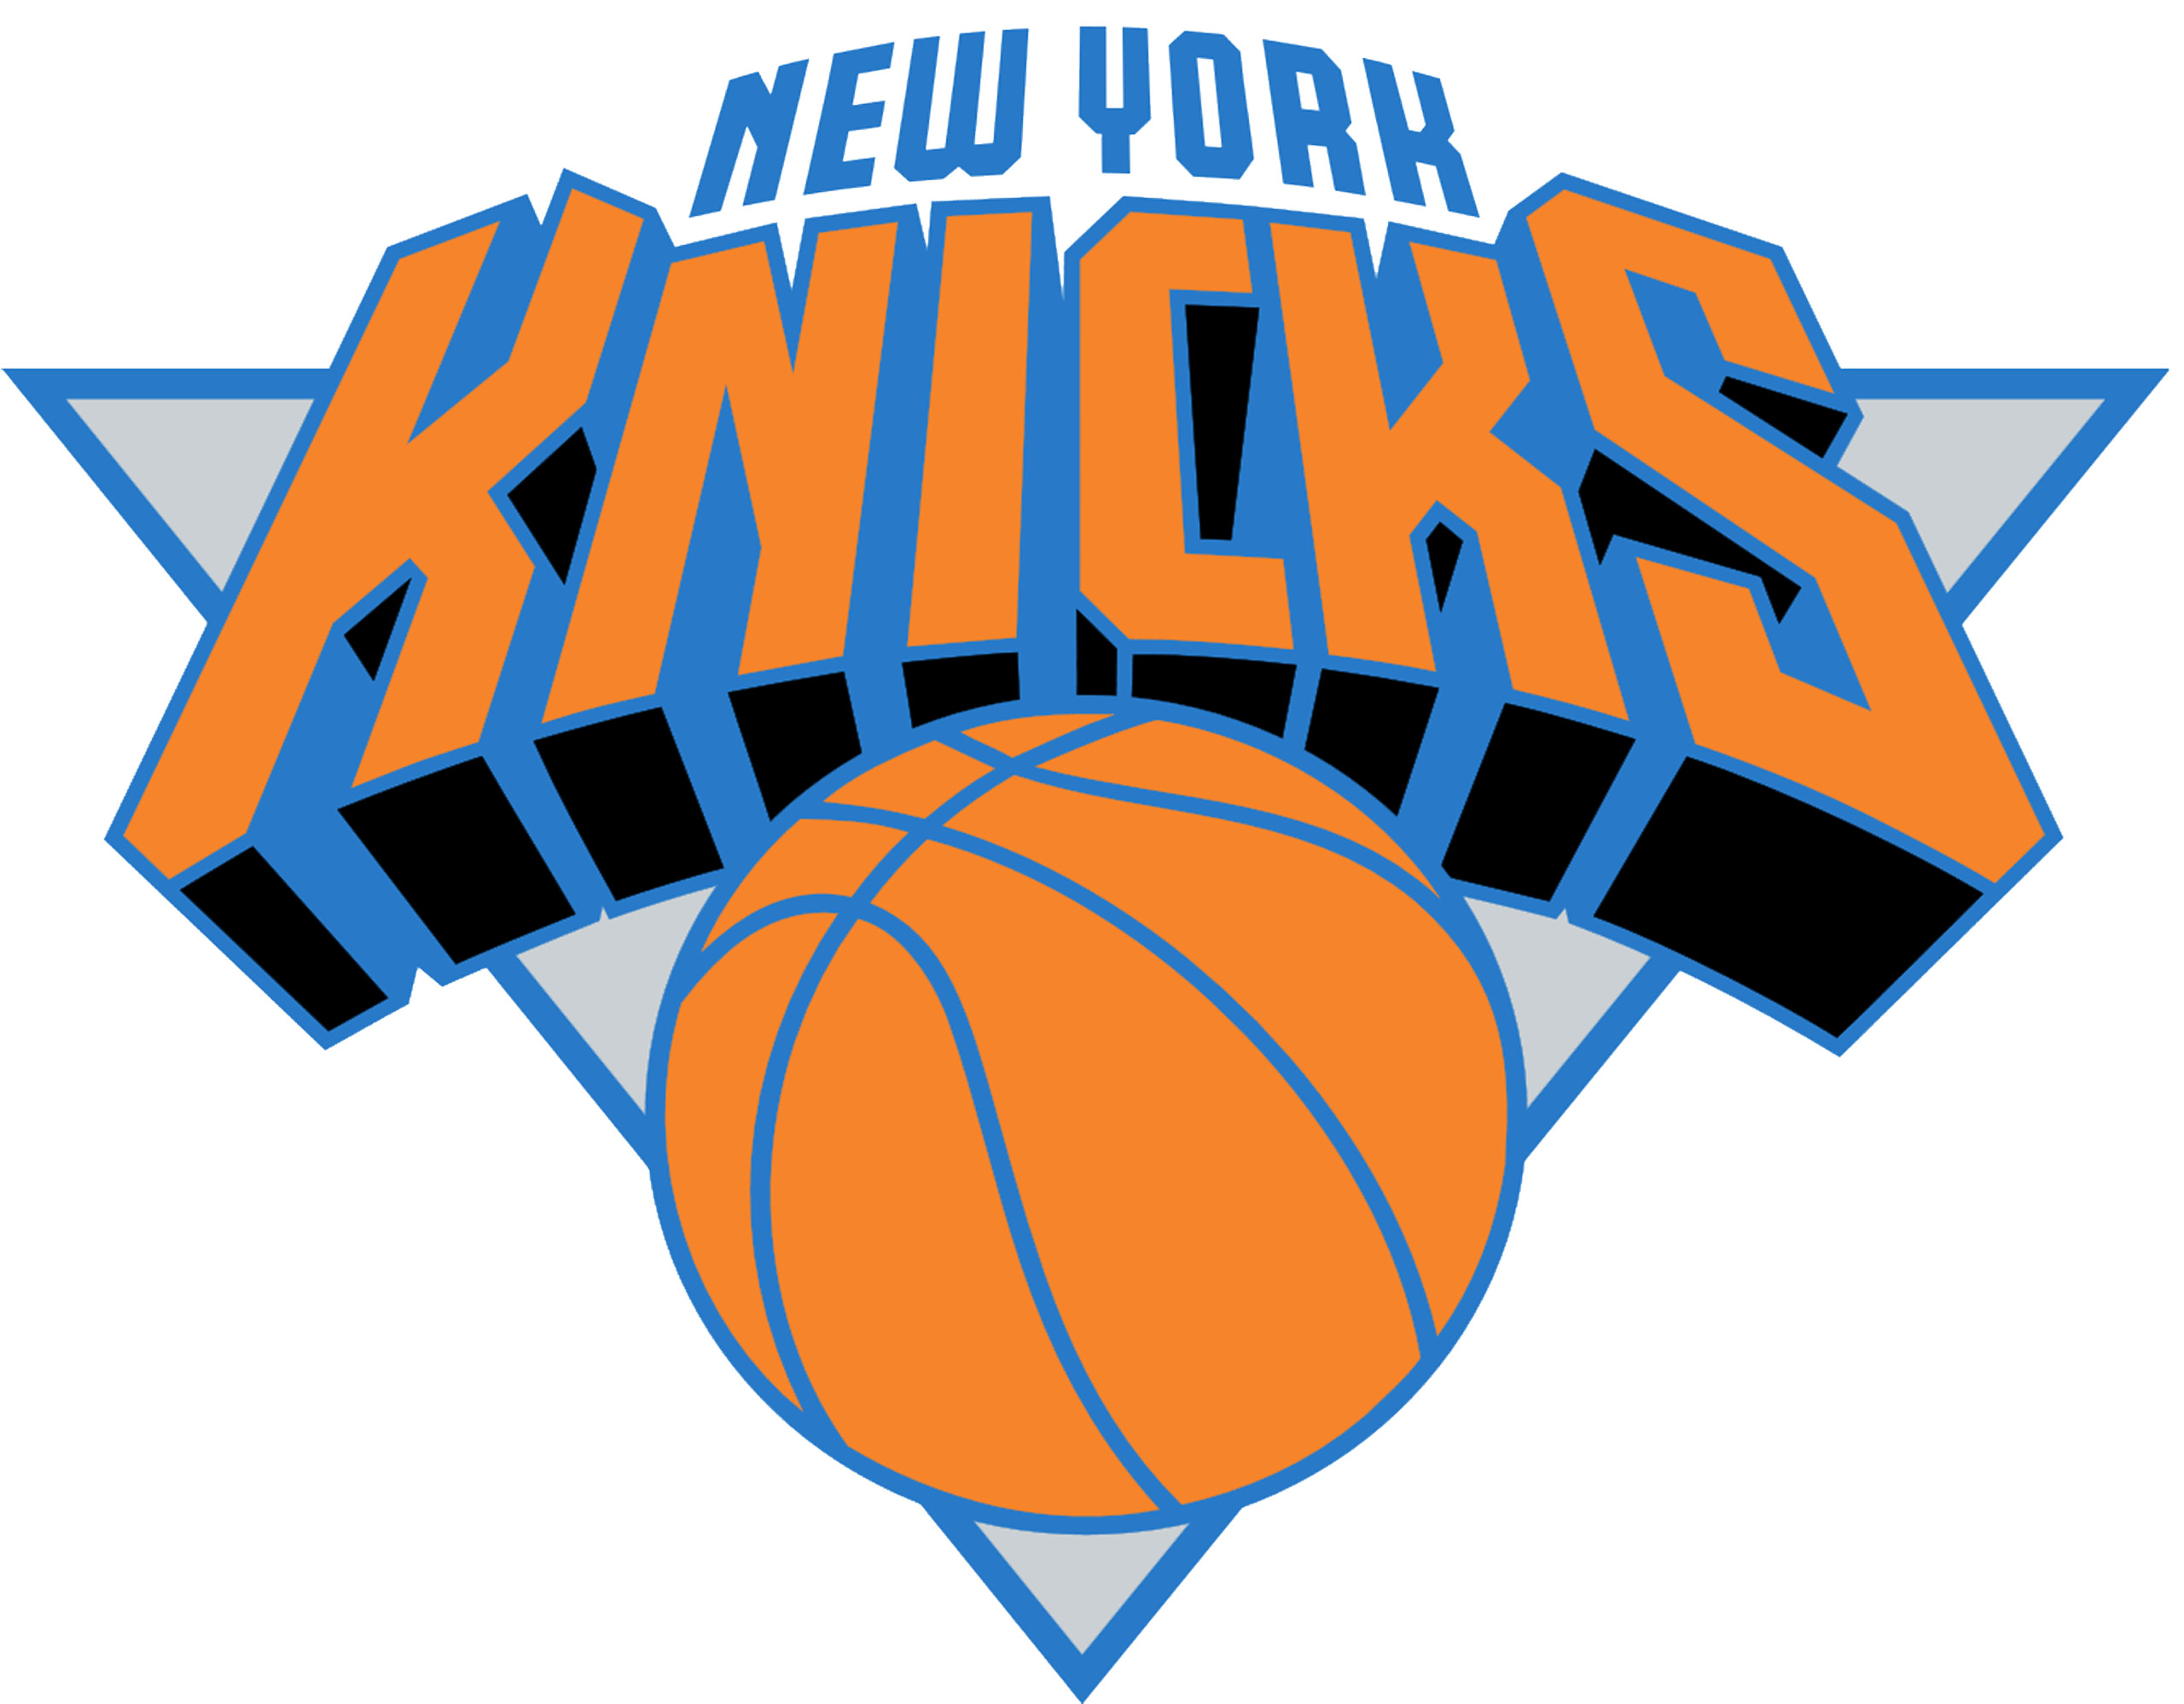 2560x1997 NEW YORK KNICKS Basketball Nba logo wallpaper over white